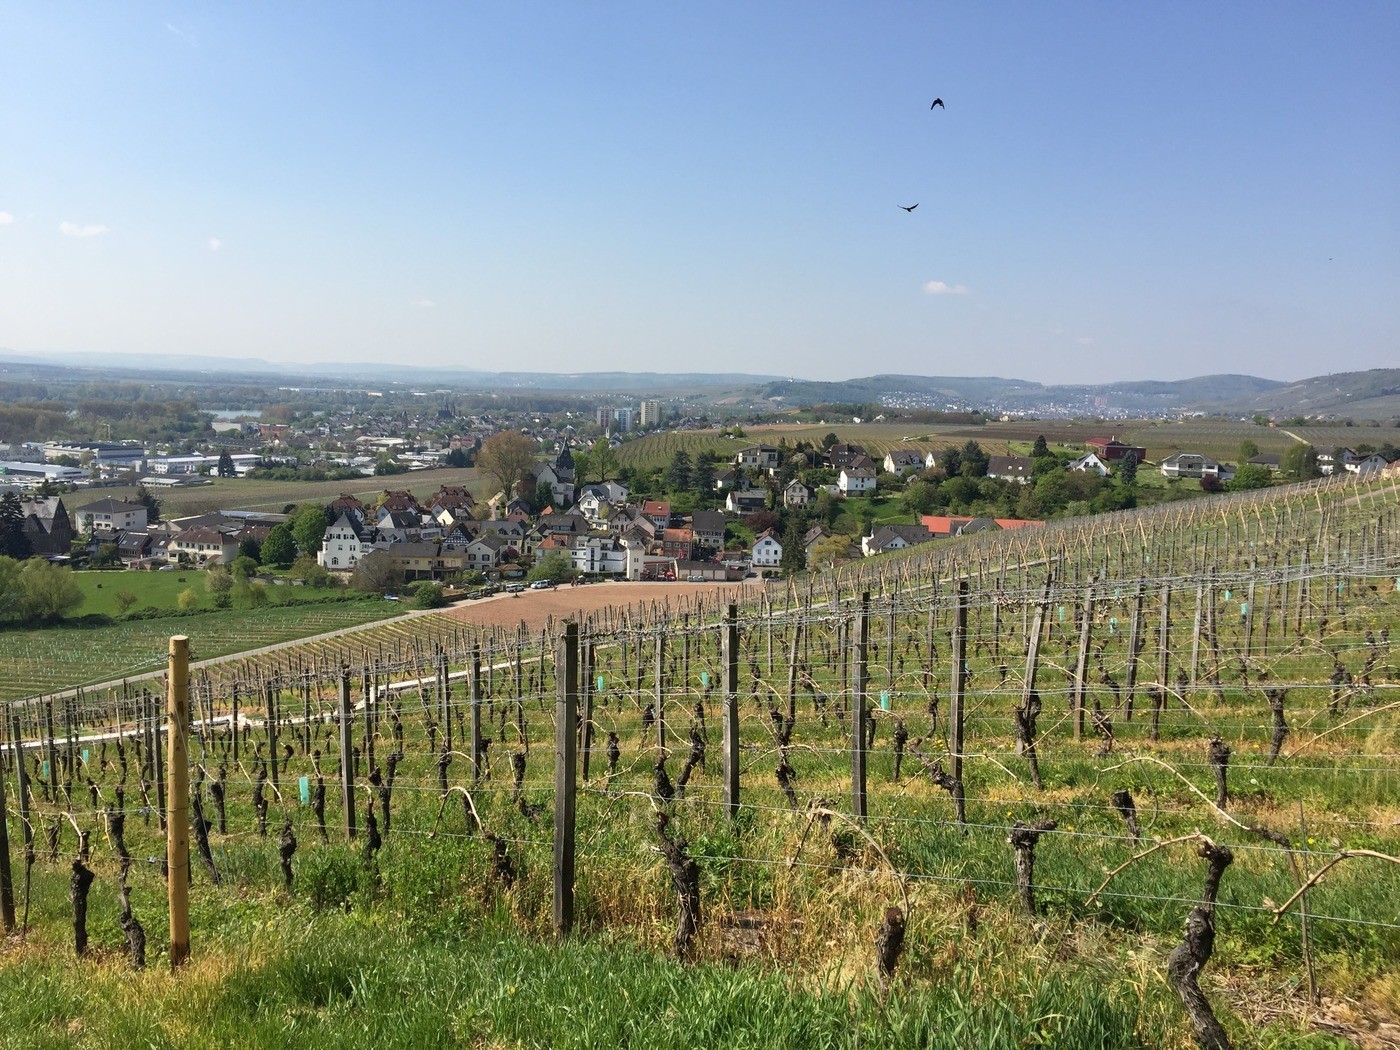 Riesling grapes growing in Schloss Johannisberg vineyard in Rheingau